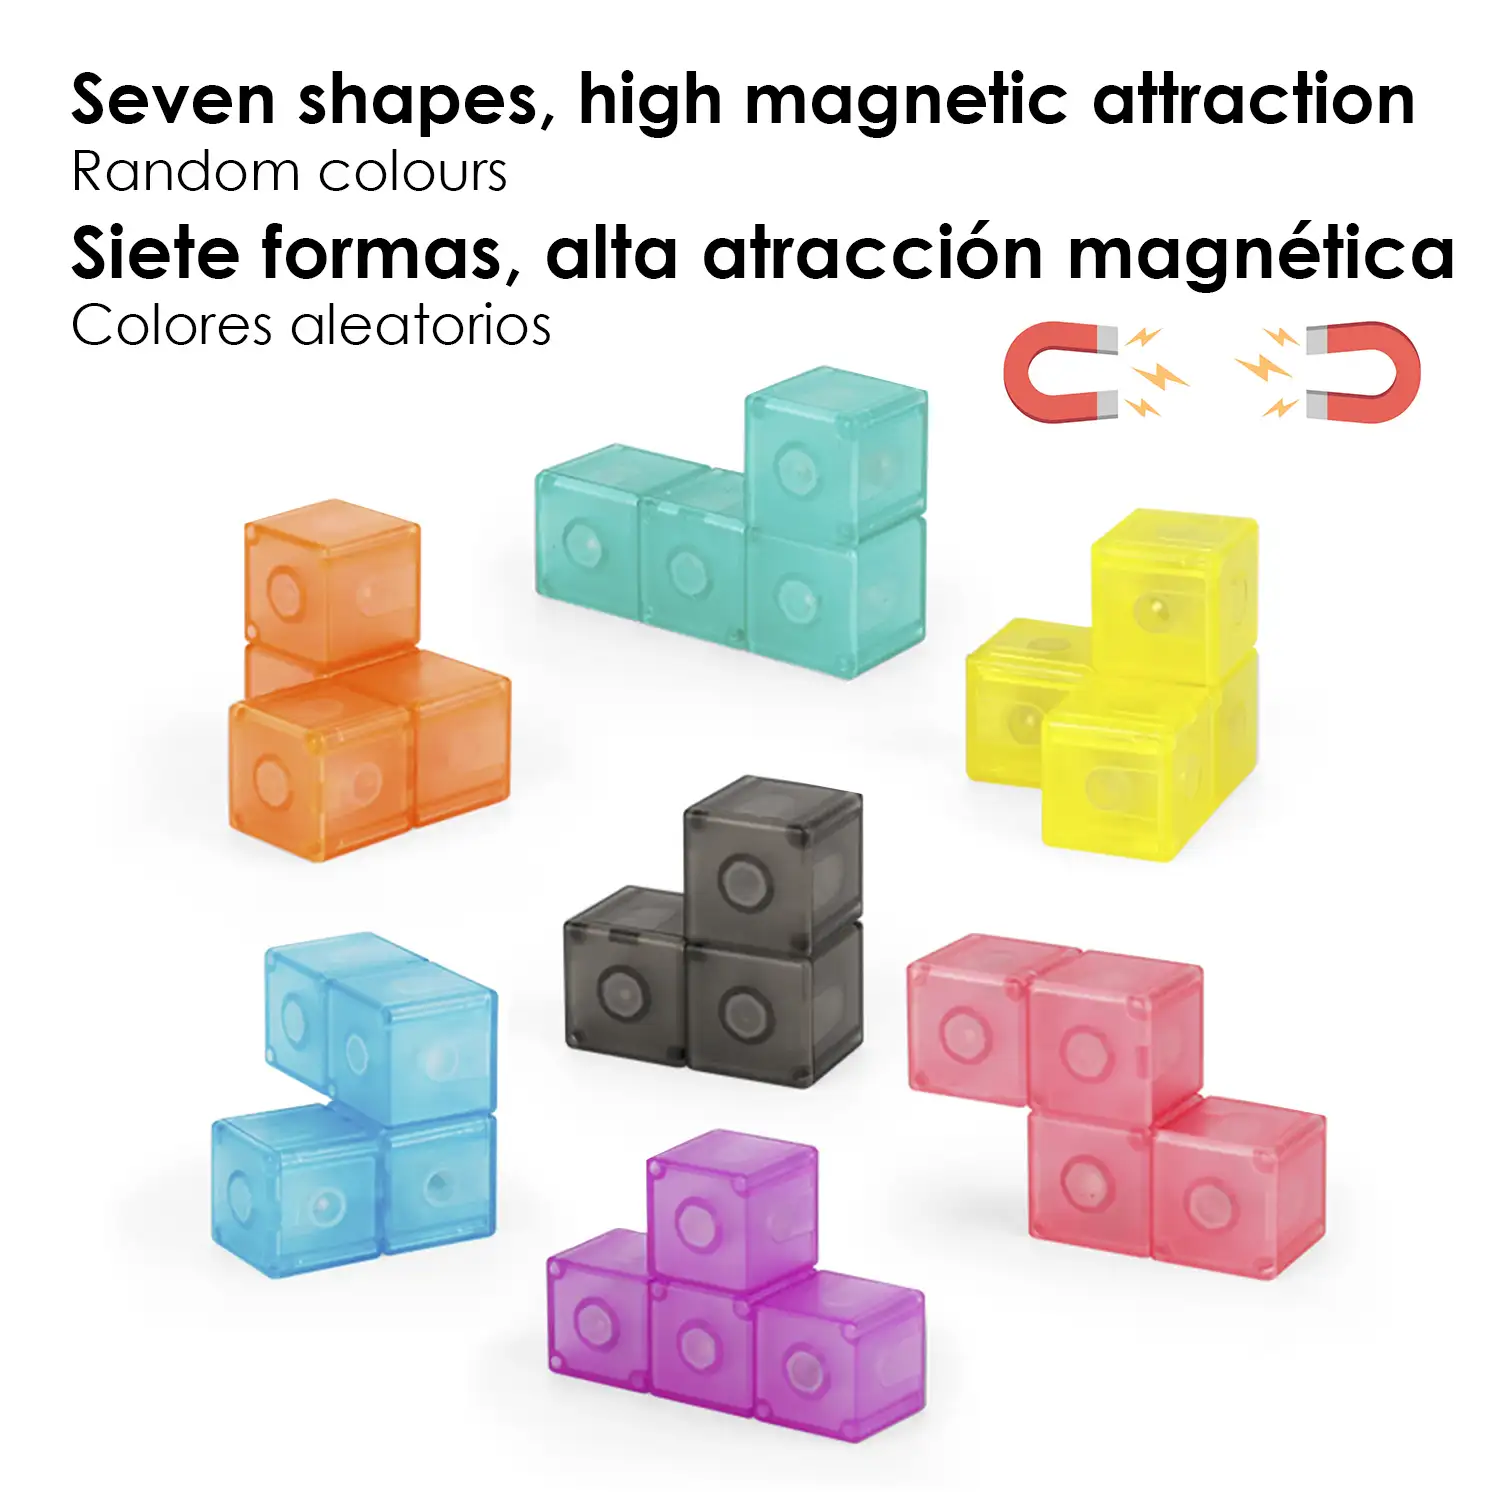 Cubo Twist. en 3 dimensiones, desafios con niveles de dificultad. 7 piezas